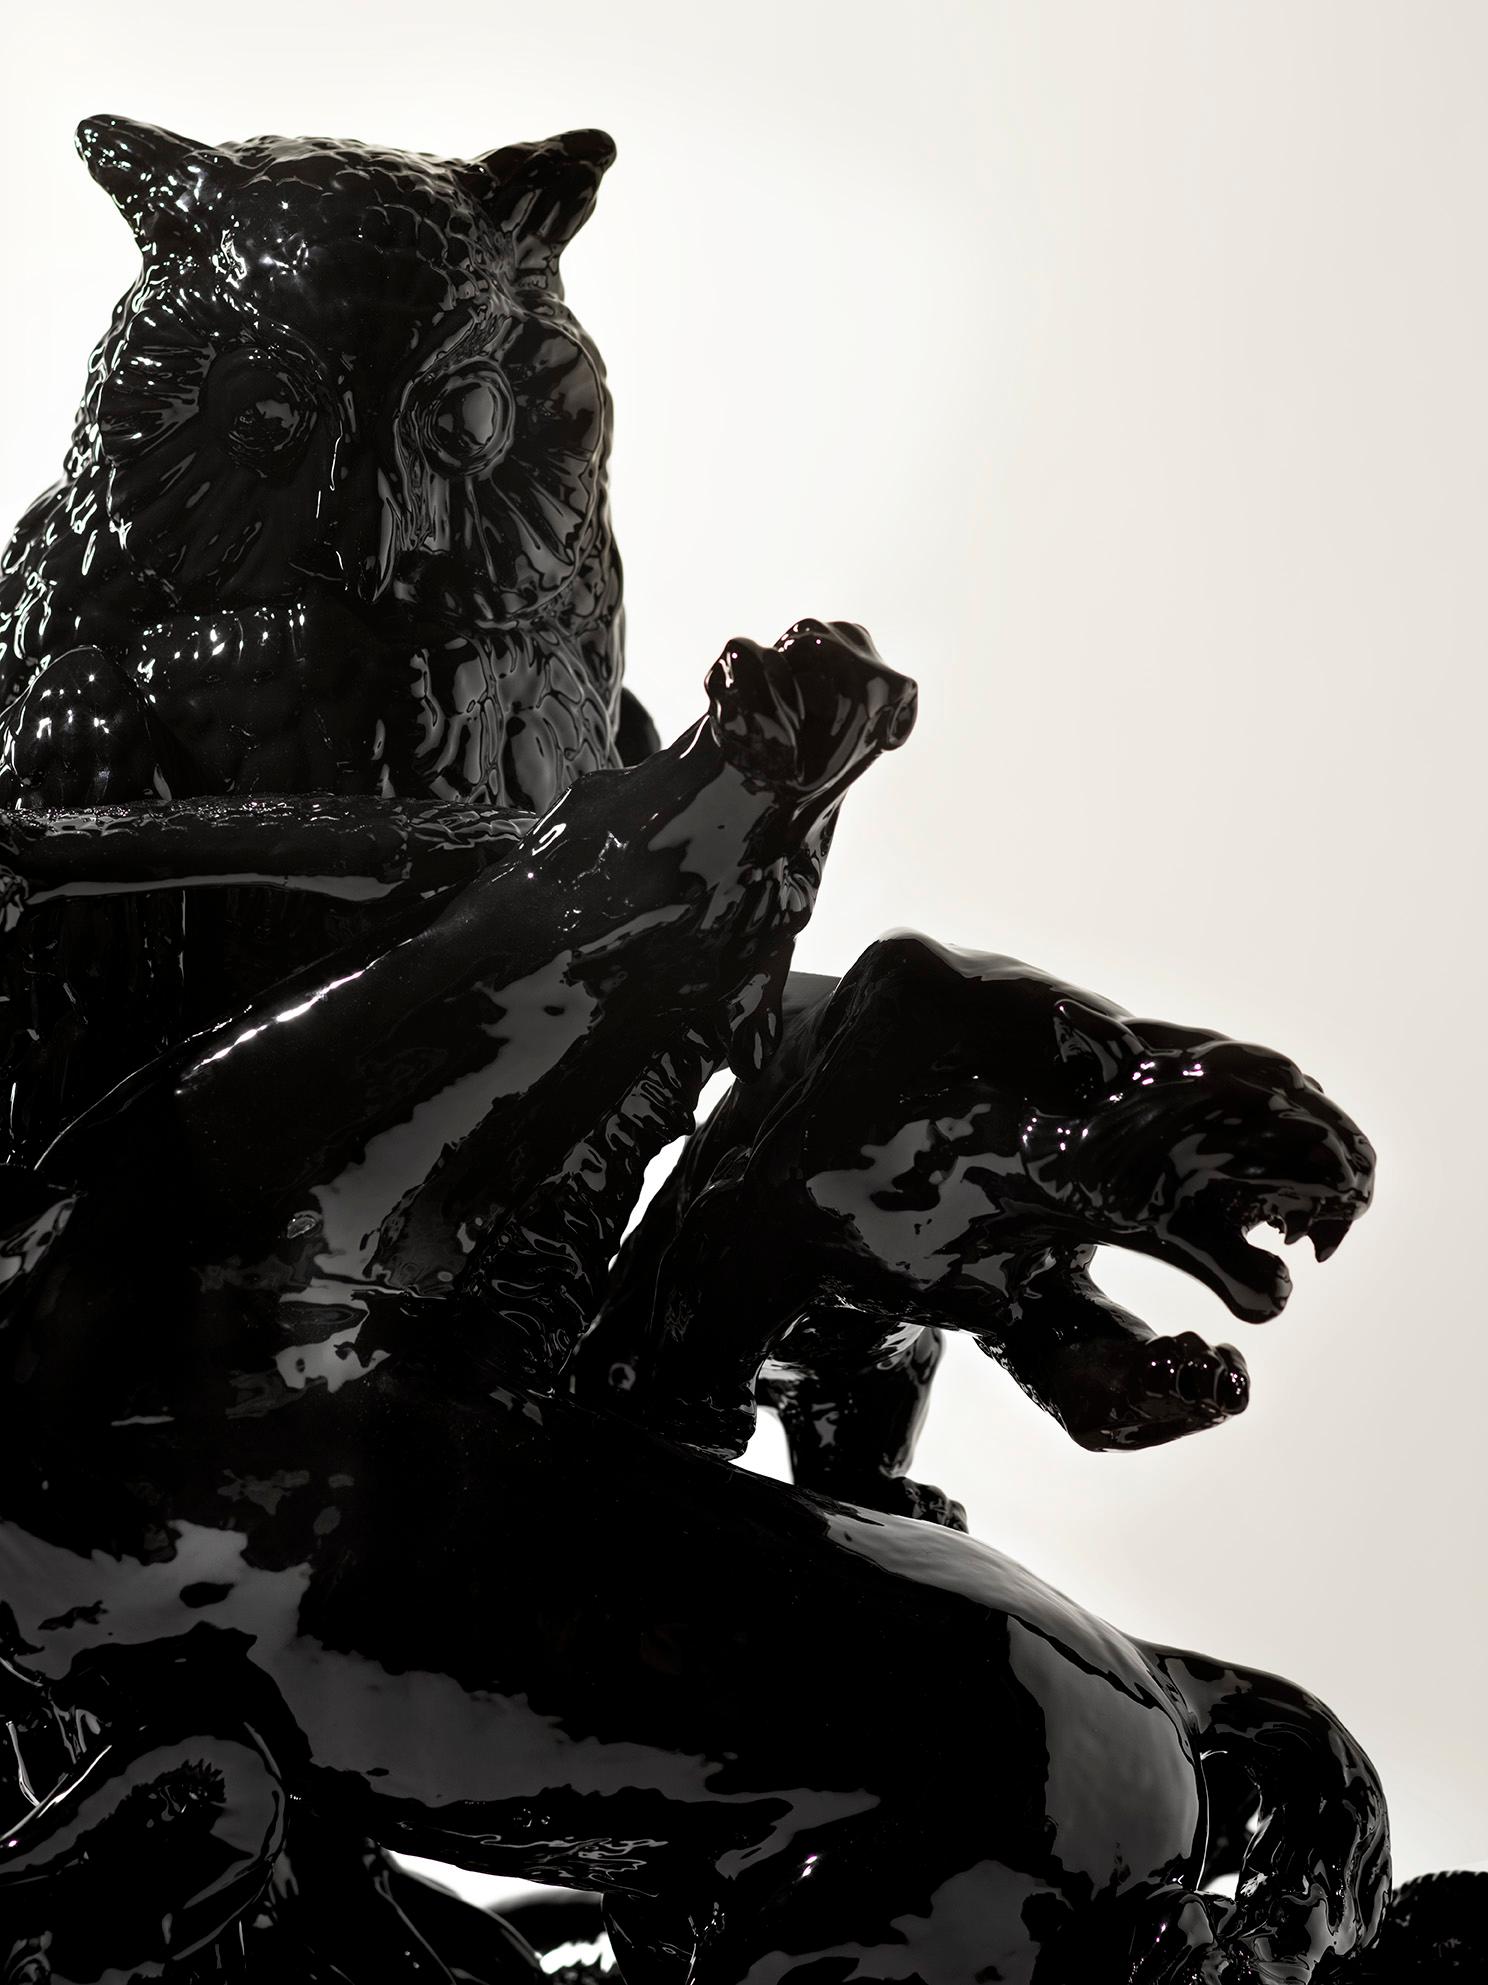 schwarze Eulenskulptur des 21. Jahrhunderts von Andrea Anastasio, Ceramica Gatti, Italien. Dieses in Italien hergestellte Einzelstück wurde von Andrea Anastasio in der historischen Bottega Ceramica Gatti 1928 in Faenza entworfen, die sich auf die